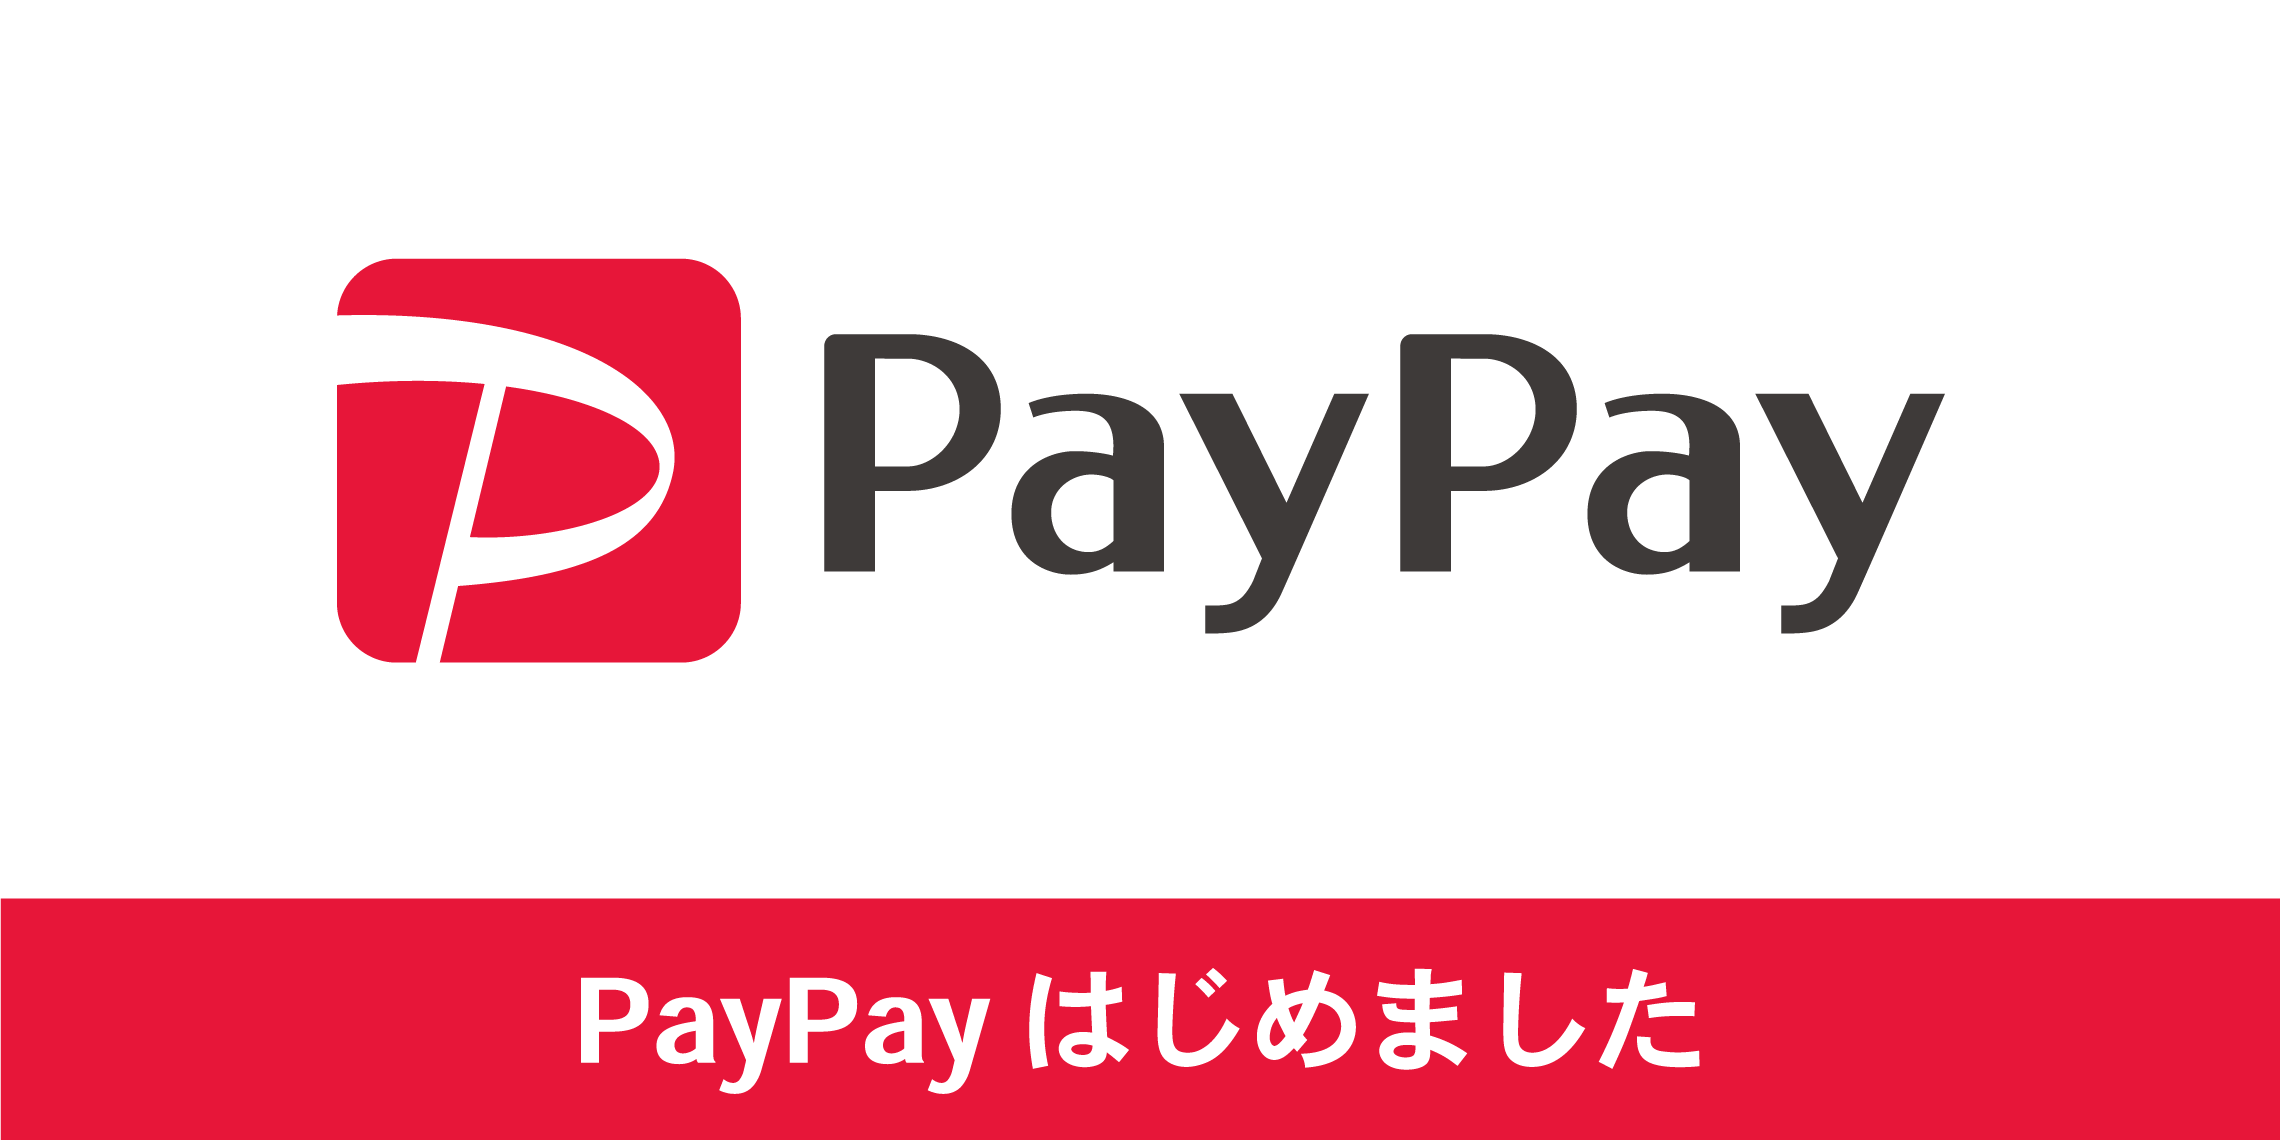 [https://twitter.com/shima_aquls:title=] *カンタン便利なQRコード決済「PayPay」当店でも利用可能です。 当店では、QRコード決済サービス『PayPay（ペイペイ）』によるお支払ができるようになりました。スマートフォンの専用アプリを使って店舗にあるQRコ […]